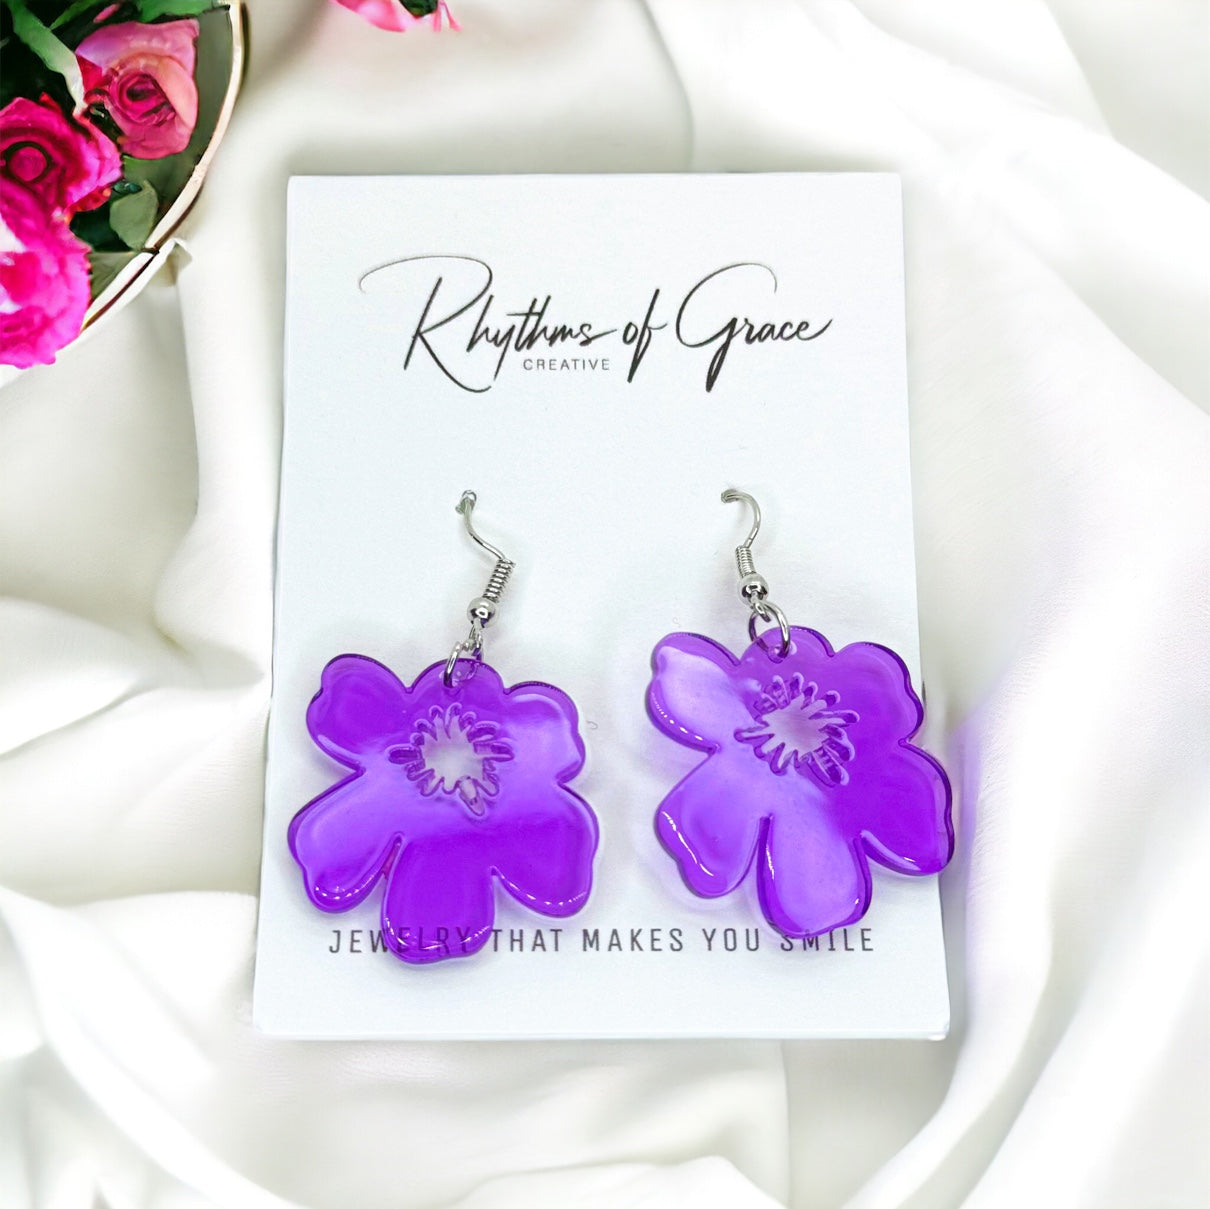 Flower Earrings - Flower Accessories, Colorful Earrings, Flower Jewelry, Tropical Flower, Handmade Earrings